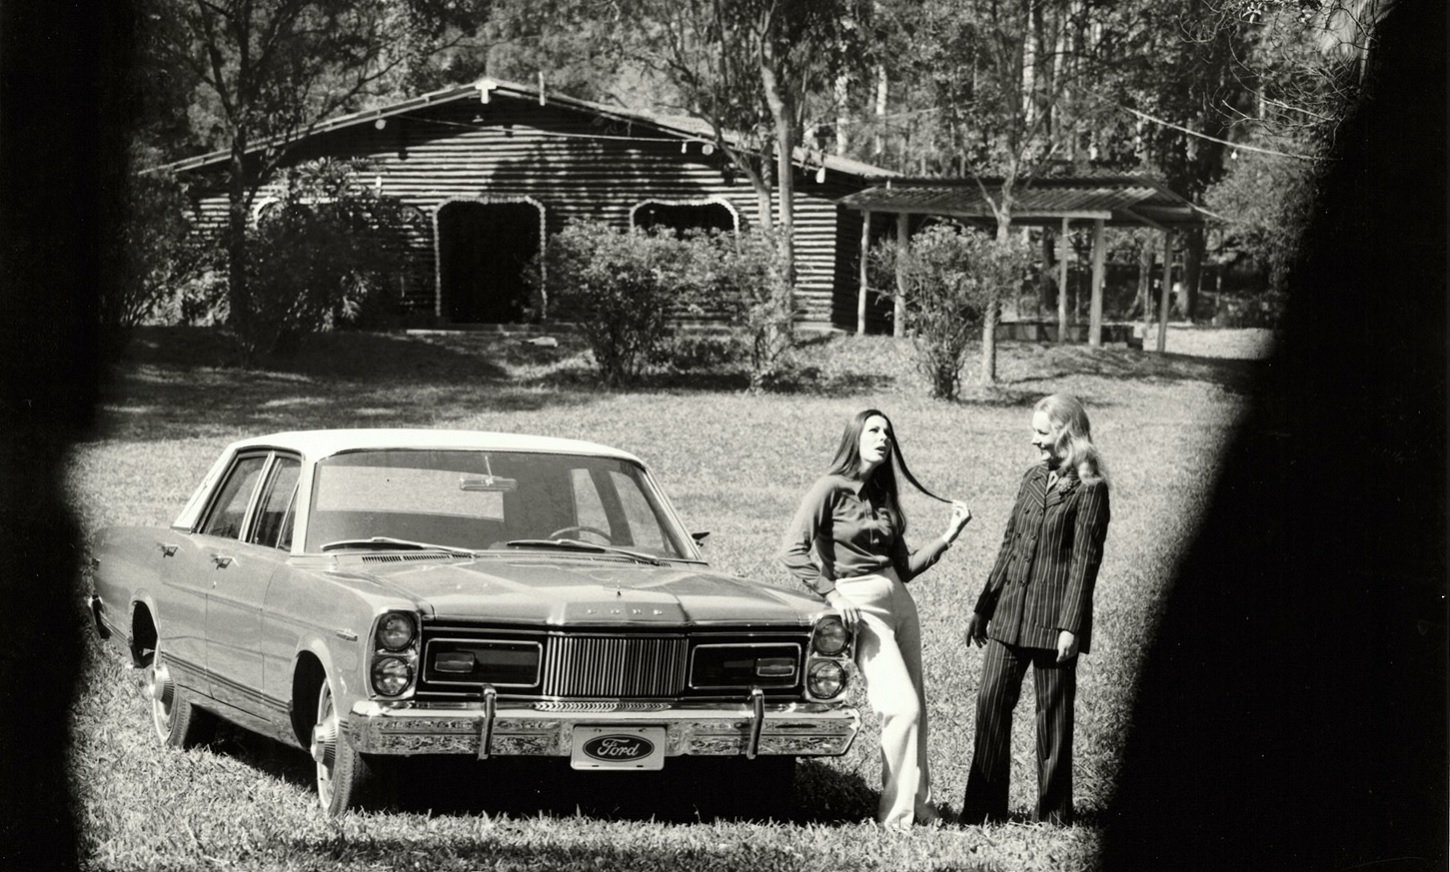 ford landau 1973 de frente com duas mulheres